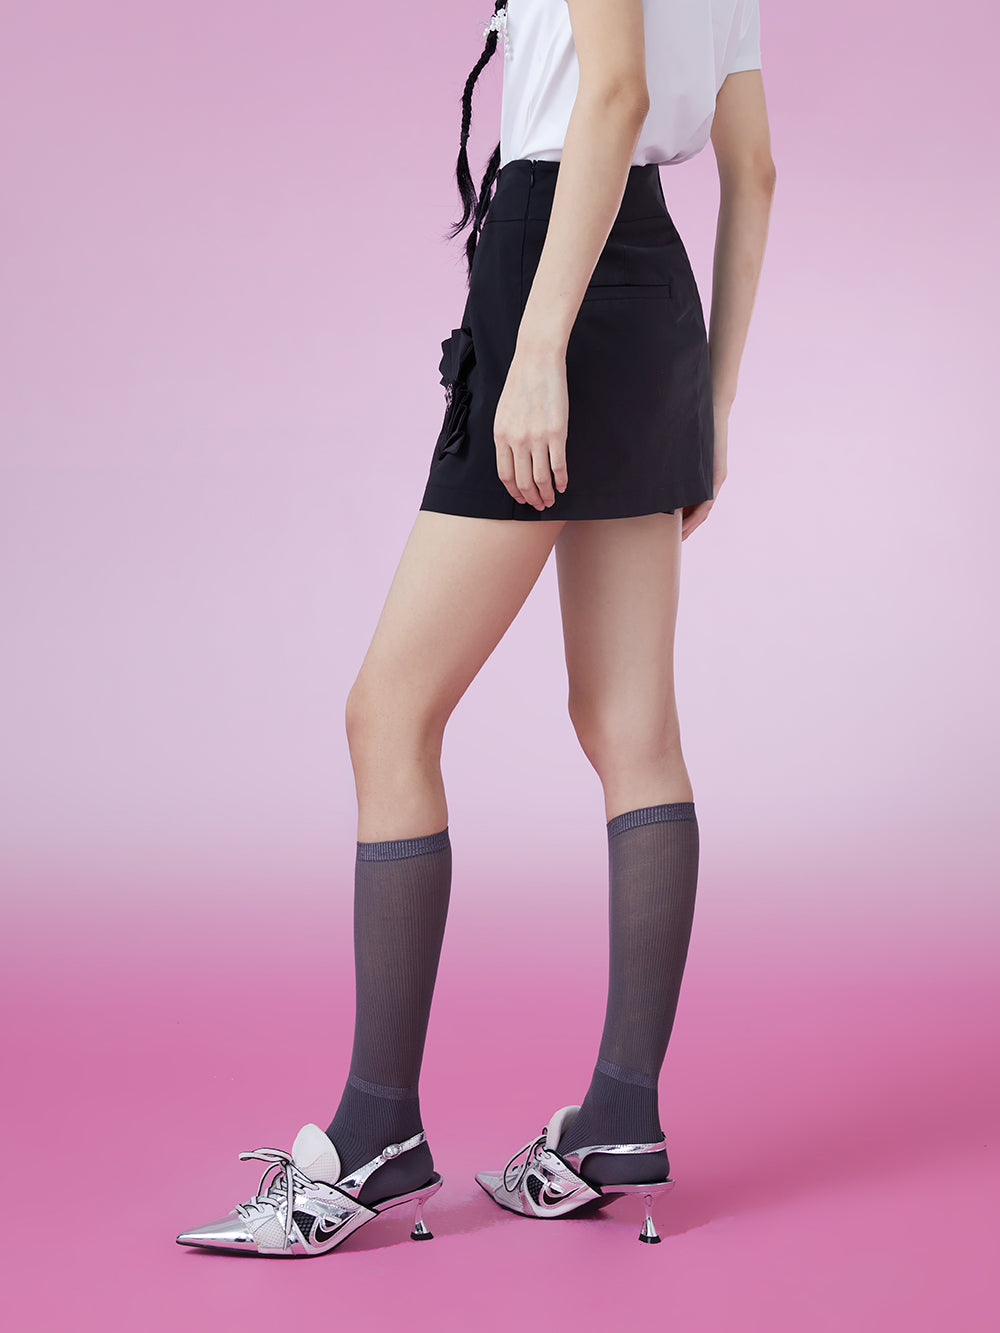 MUKZIN Look-thin Black Trend Original Mini Skirts